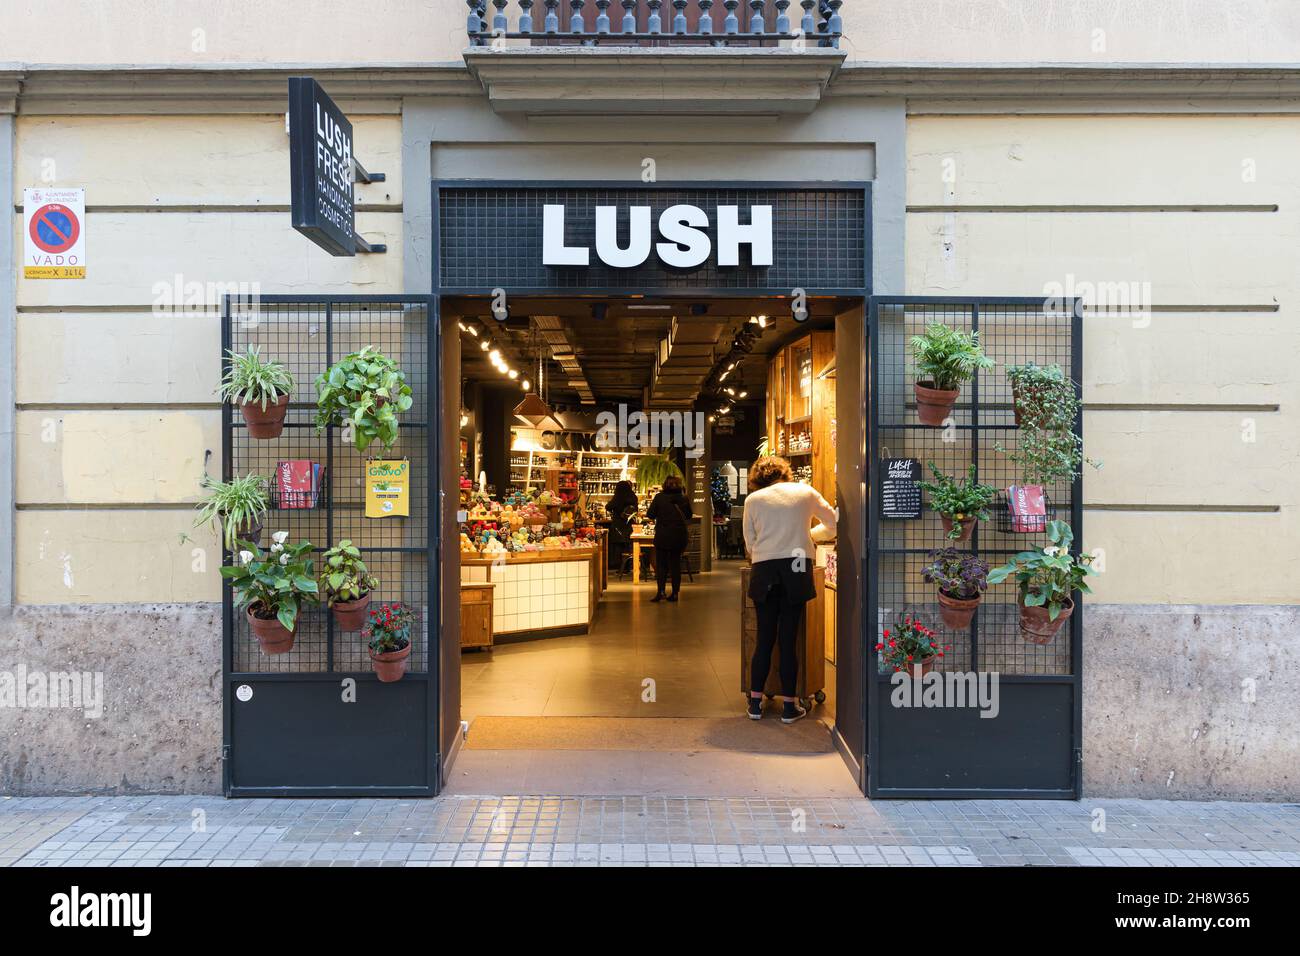 VALENCIA, SPANIEN - 02. DEZEMBER 2021: Lush ist ein britischer Kosmetikhändler, der behauptet, nur vegetarische Rezepte zu verwenden Stockfoto